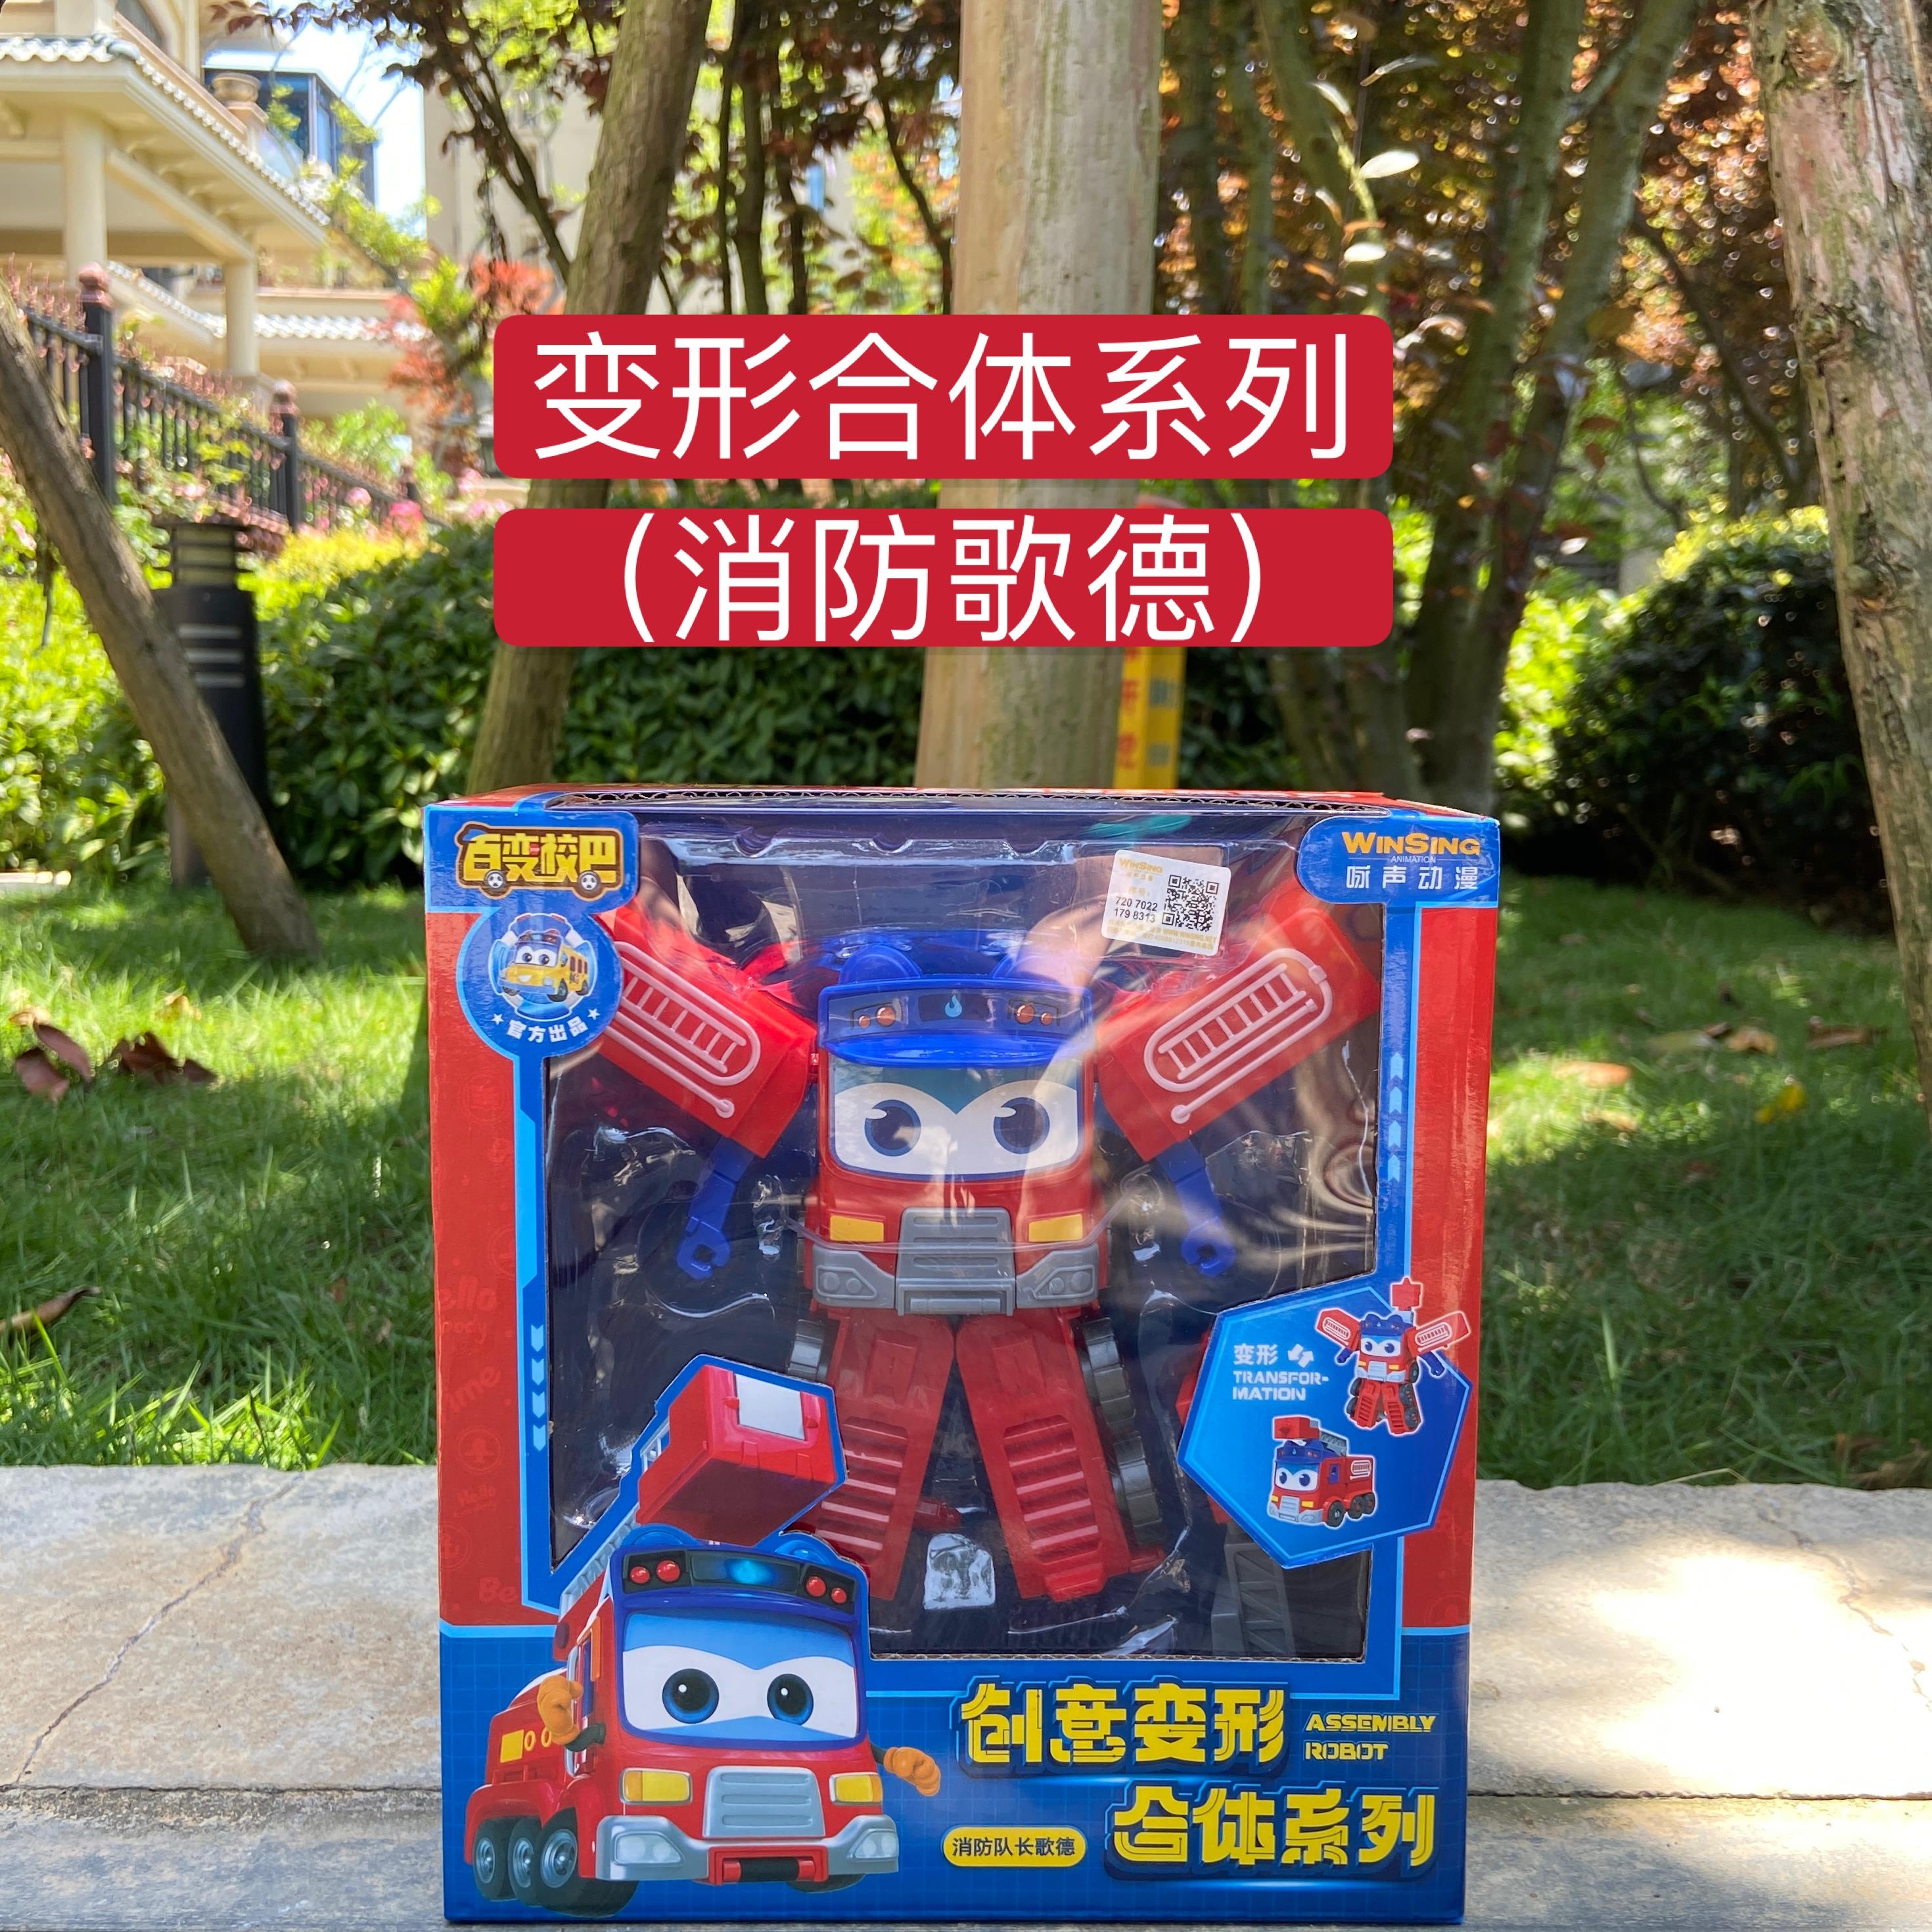 百变校巴歌德七合一儿童玩具创意合体变形机器人机船长消防警车男